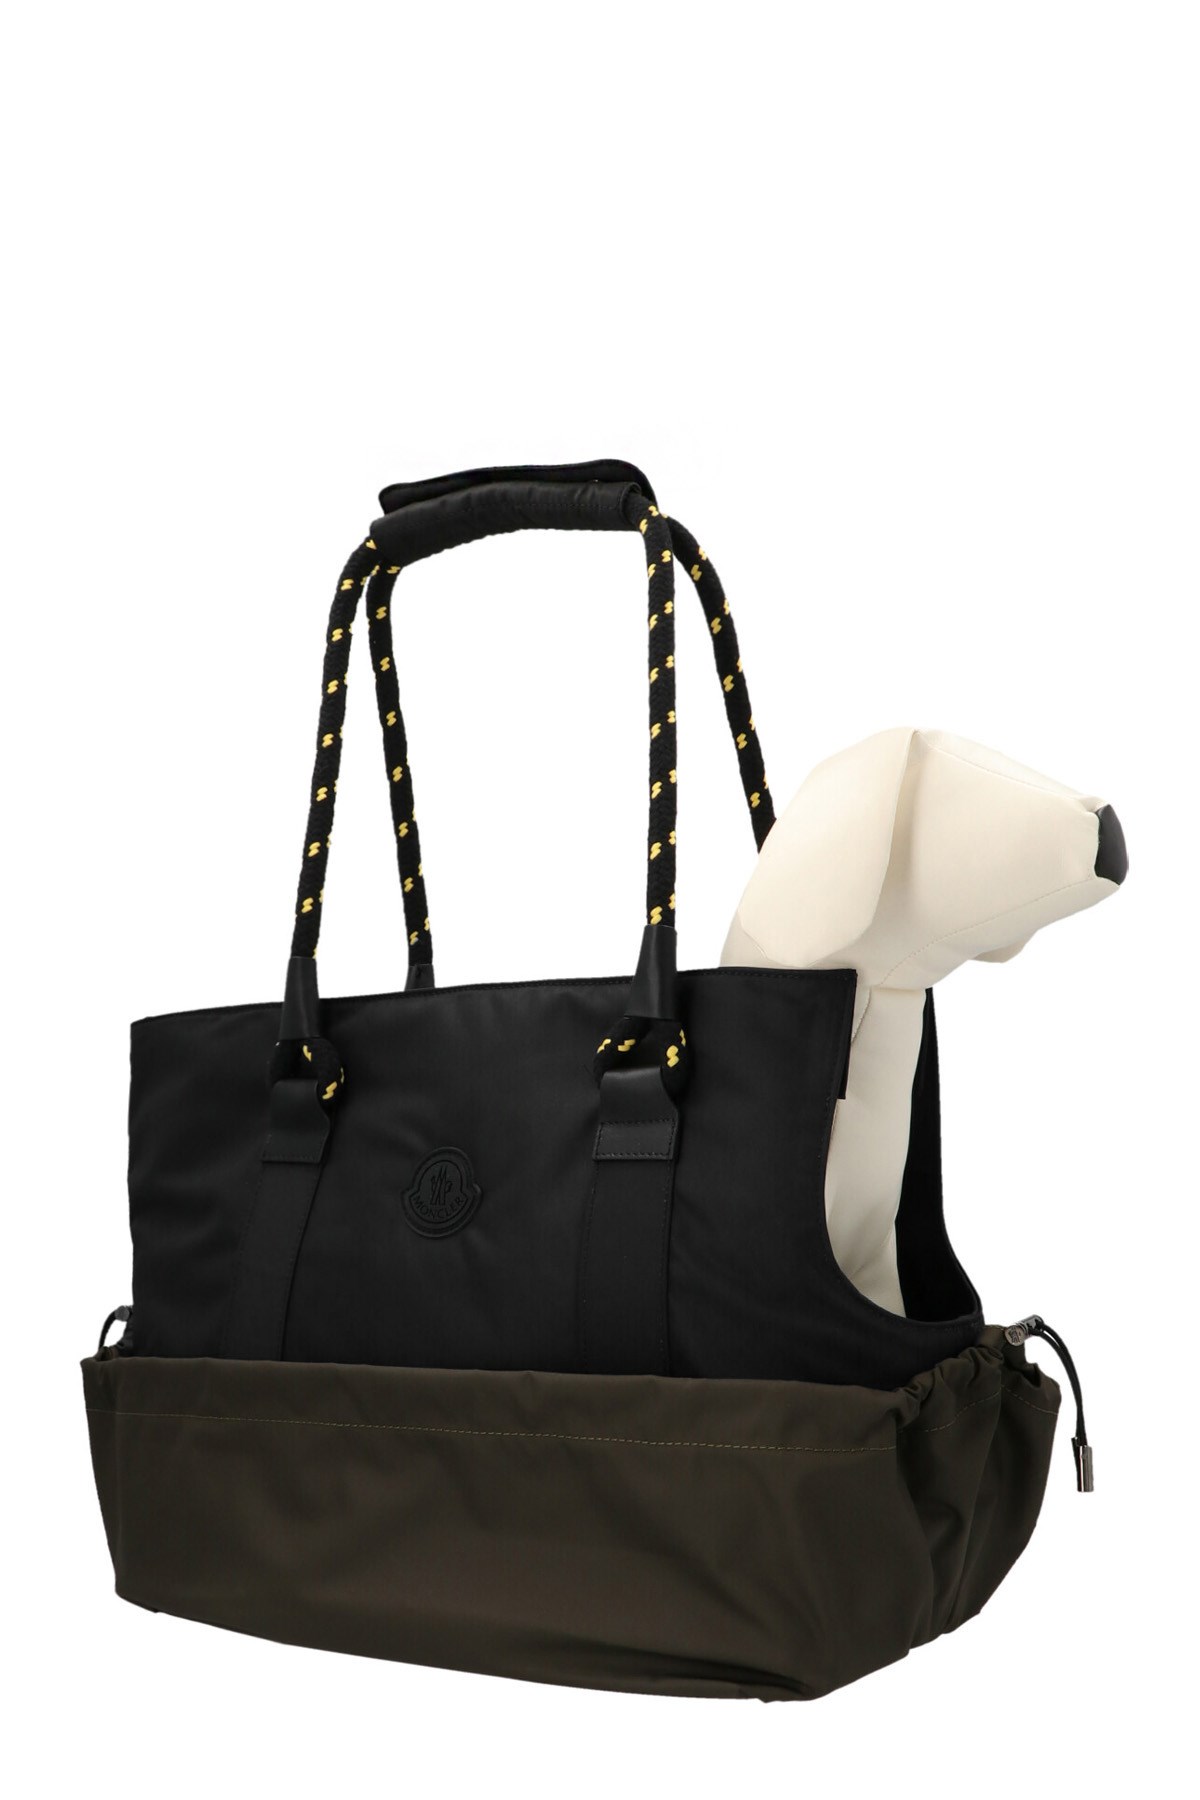 MONCLER GENIUS Moncler Genius X Poldo Dog Carry Bag